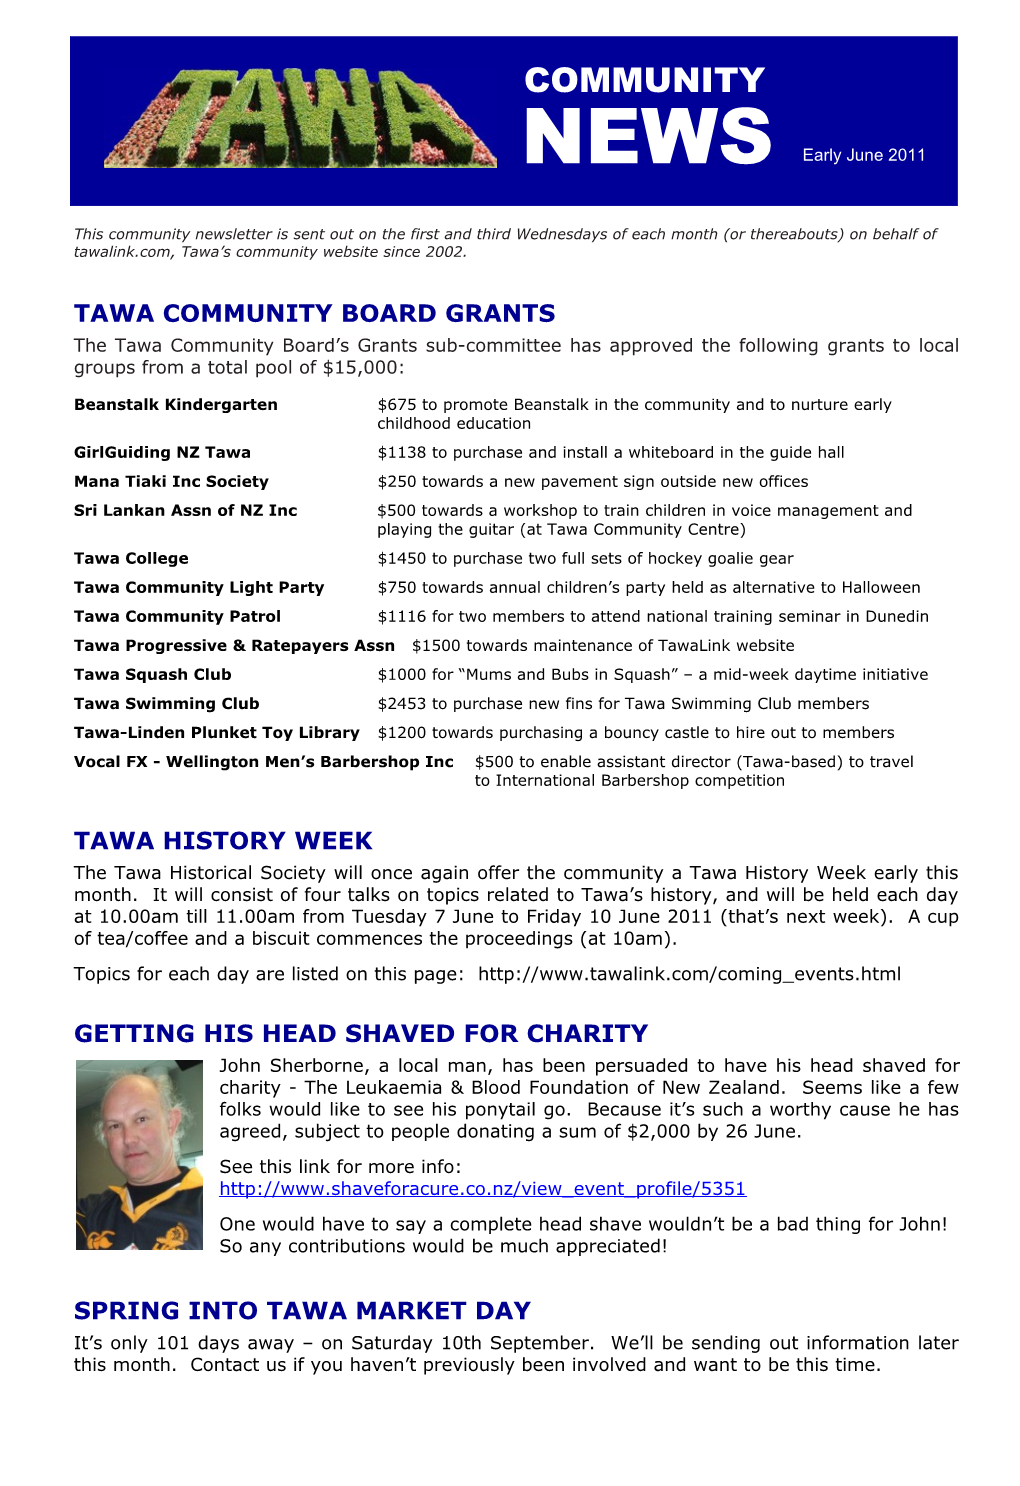 Tawa Community Board Grants